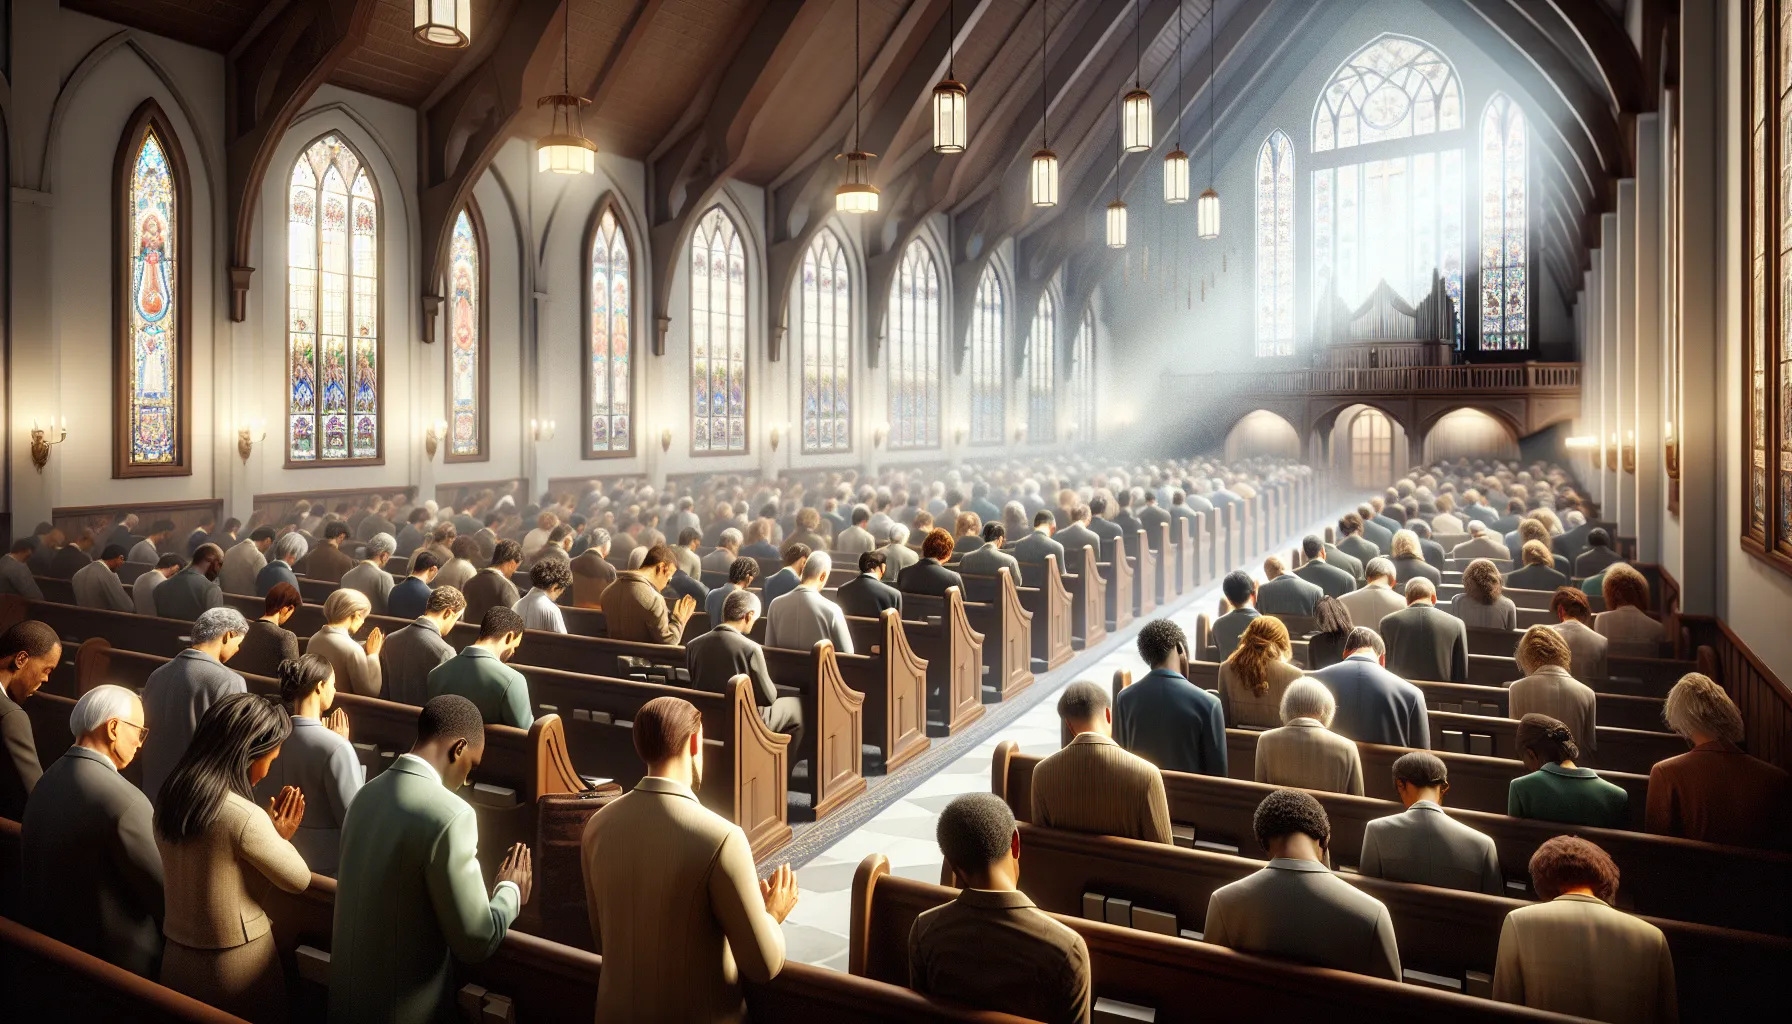 Imagen de personas orando en una iglesia adventista del séptimo día durante un servicio religioso.